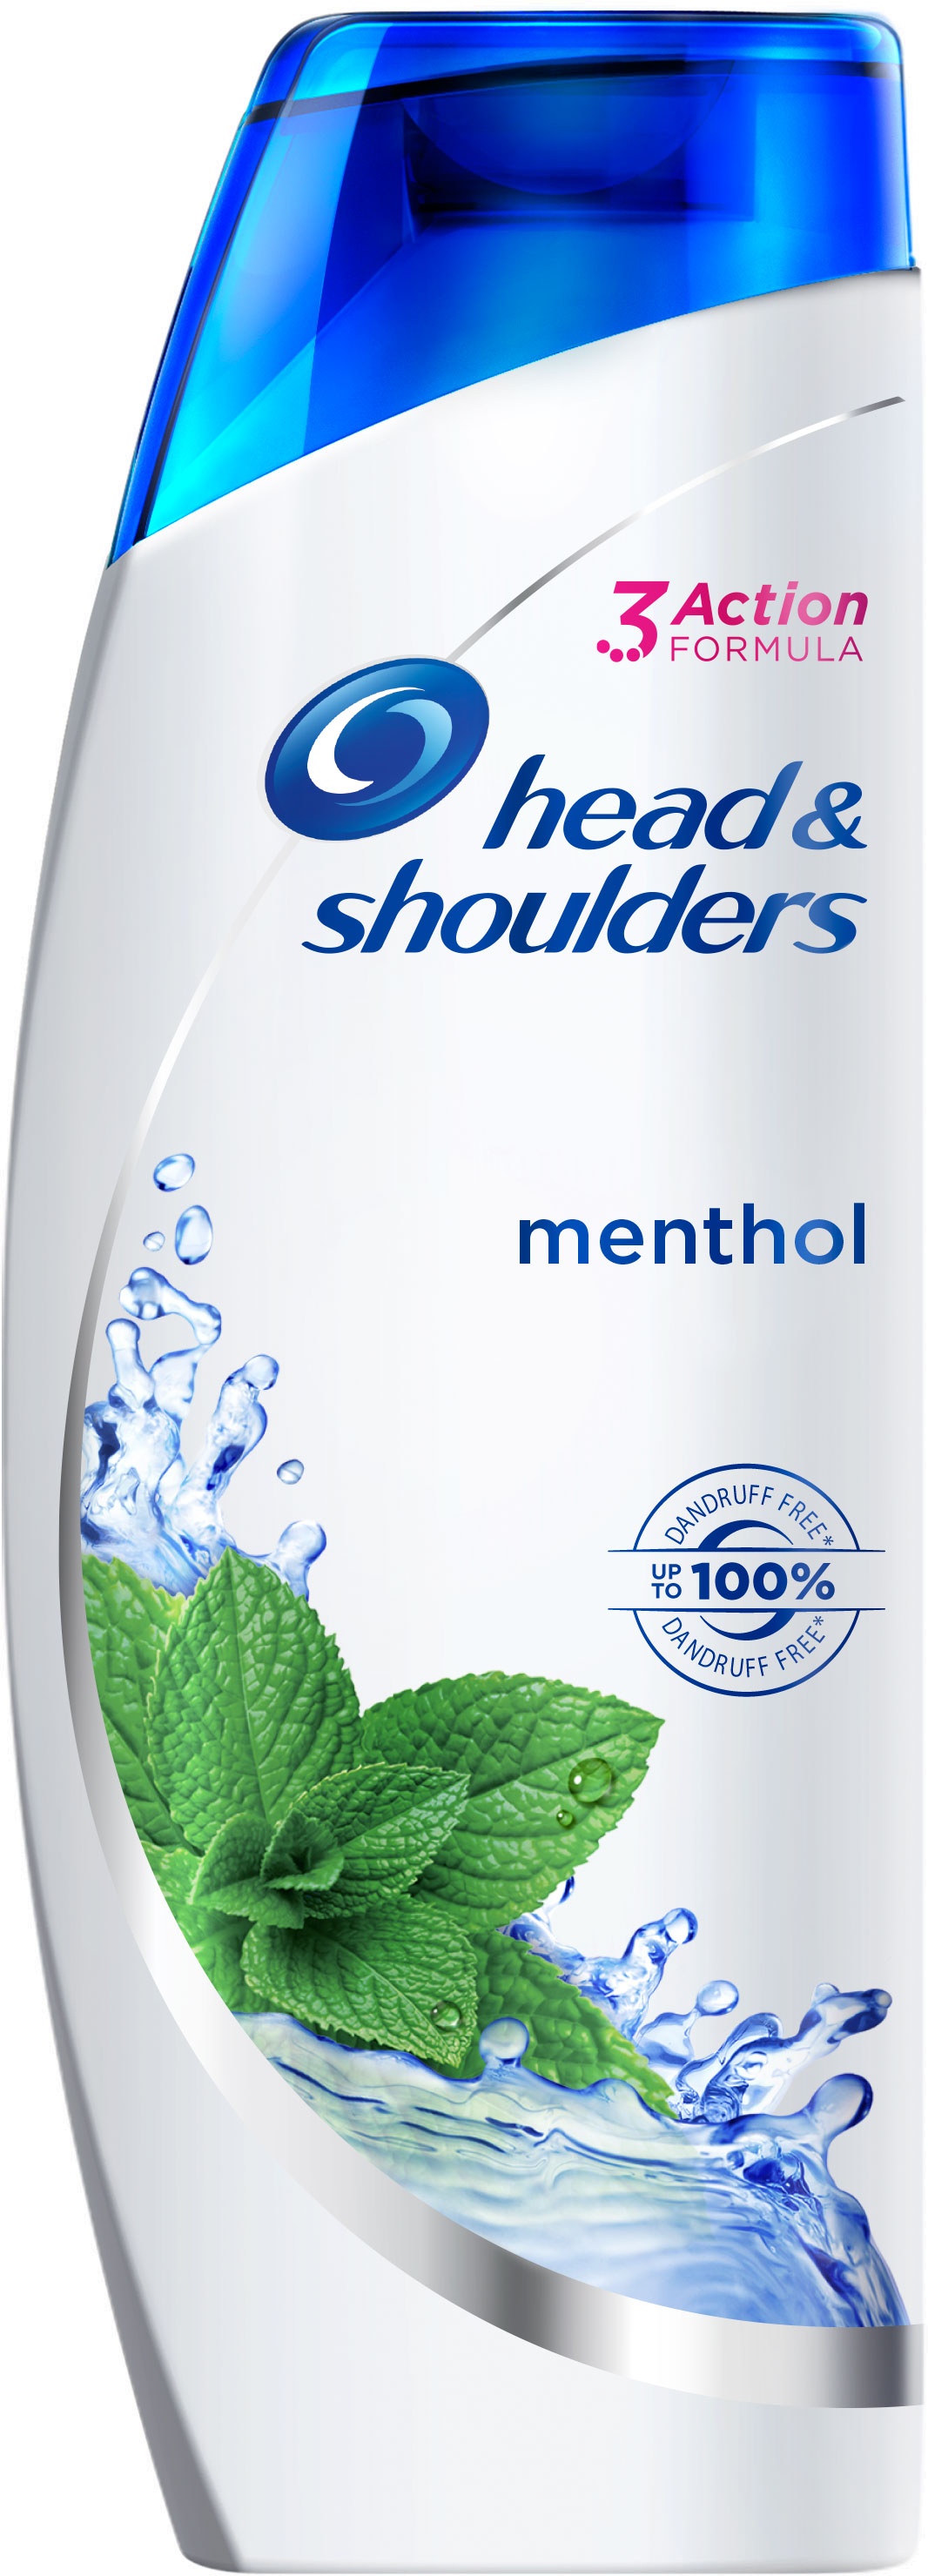 Slika za Šampon za kosu mentol Head&Shoulders 225ml